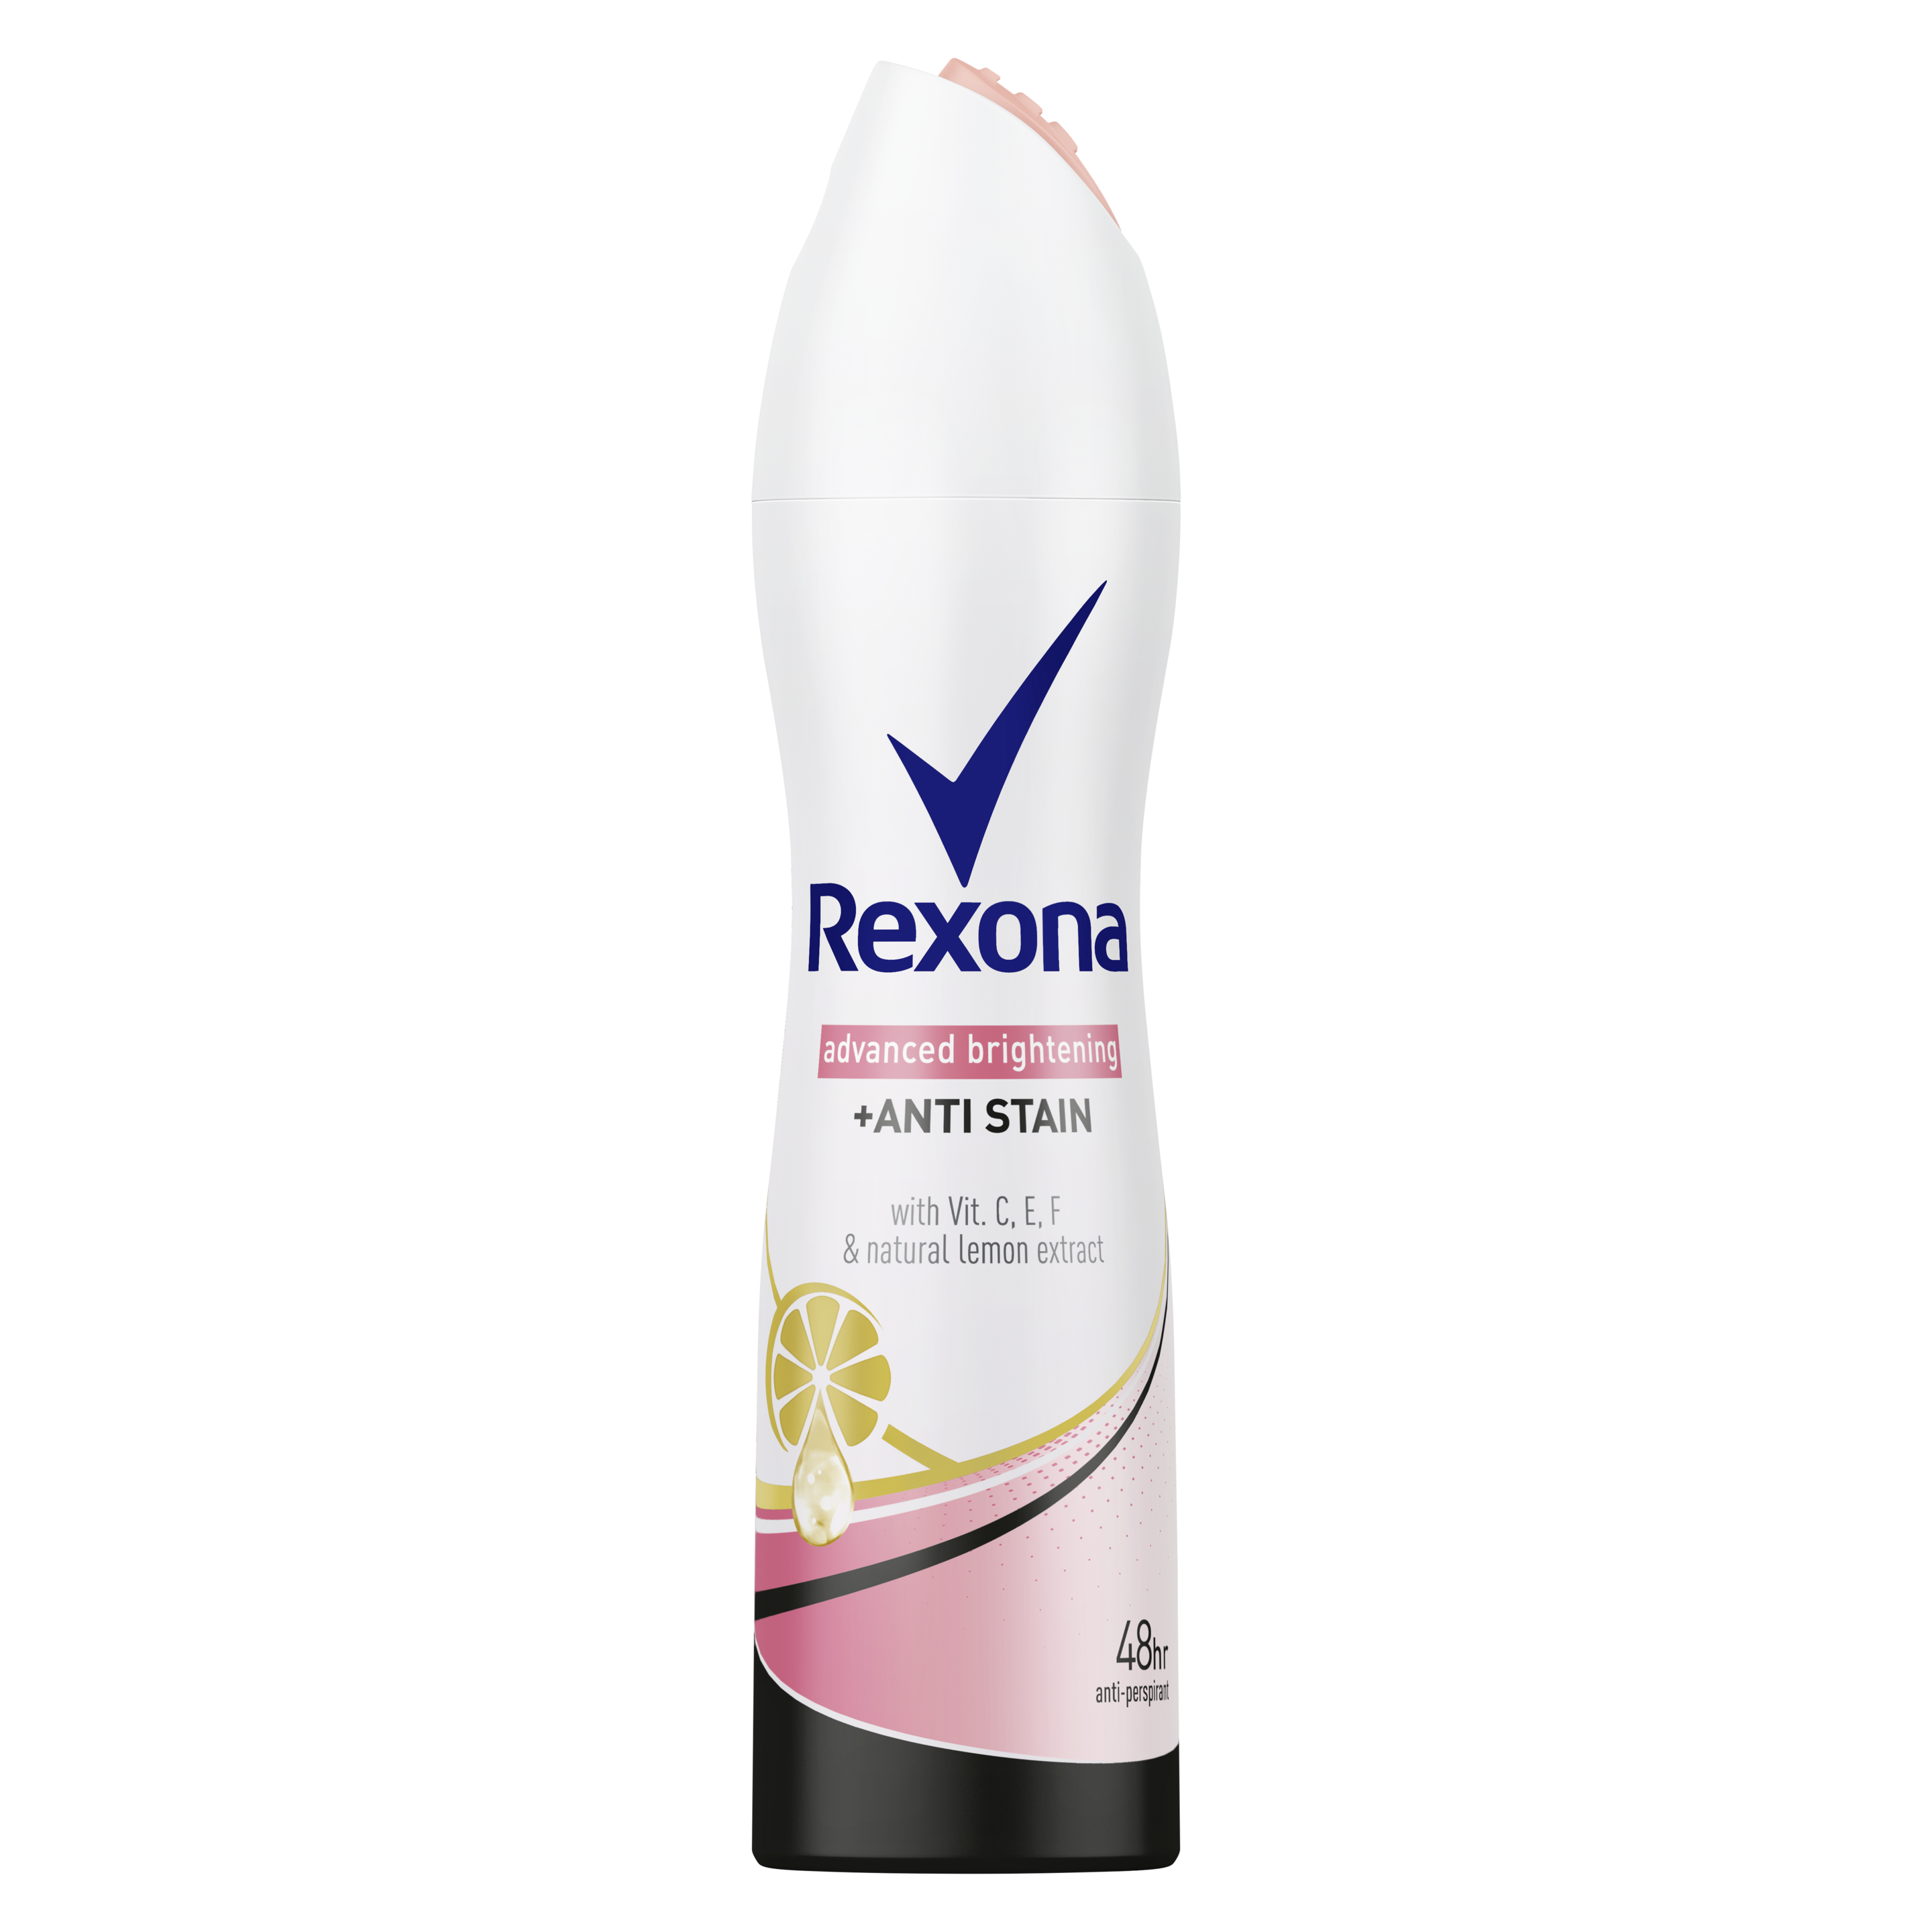 Rexona Advanced Brightening + Anti Stain Dry Serum Deodorant